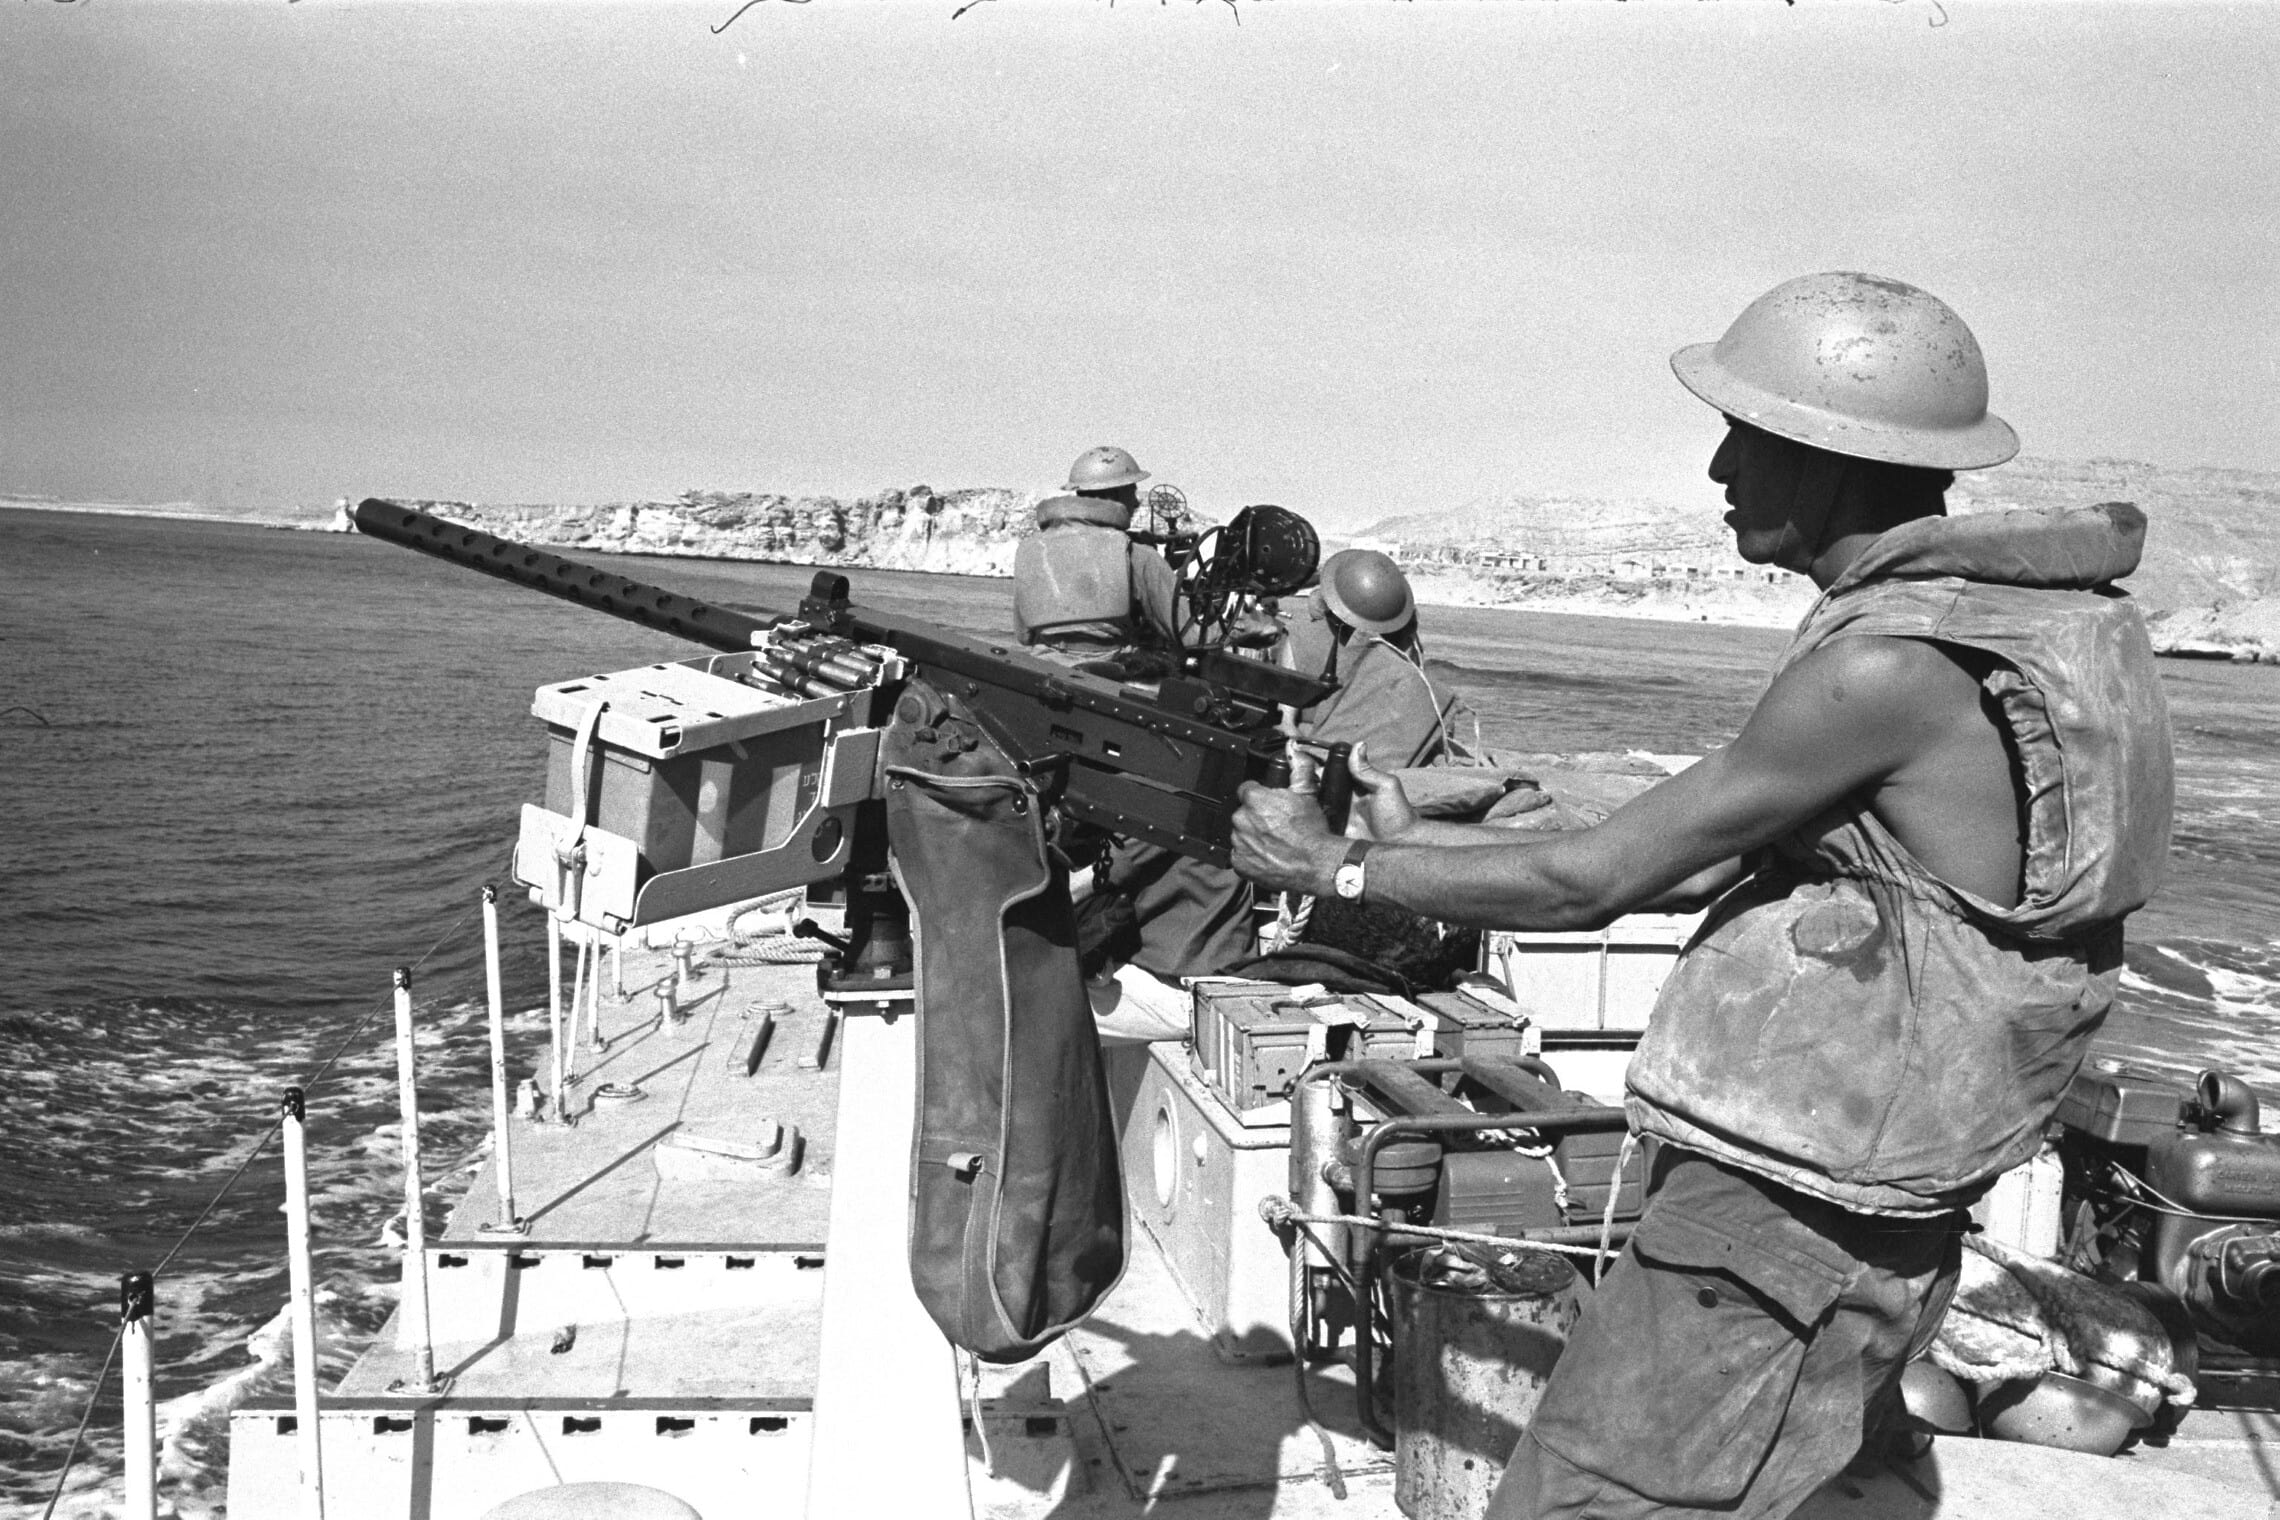 ספינת חיל הים עוברת במיצרי טיראן במלחמת ששת הימים, 6 ביוני 1967 (צילום: יעקב אגור, אוסף התצלומים הלאומי)